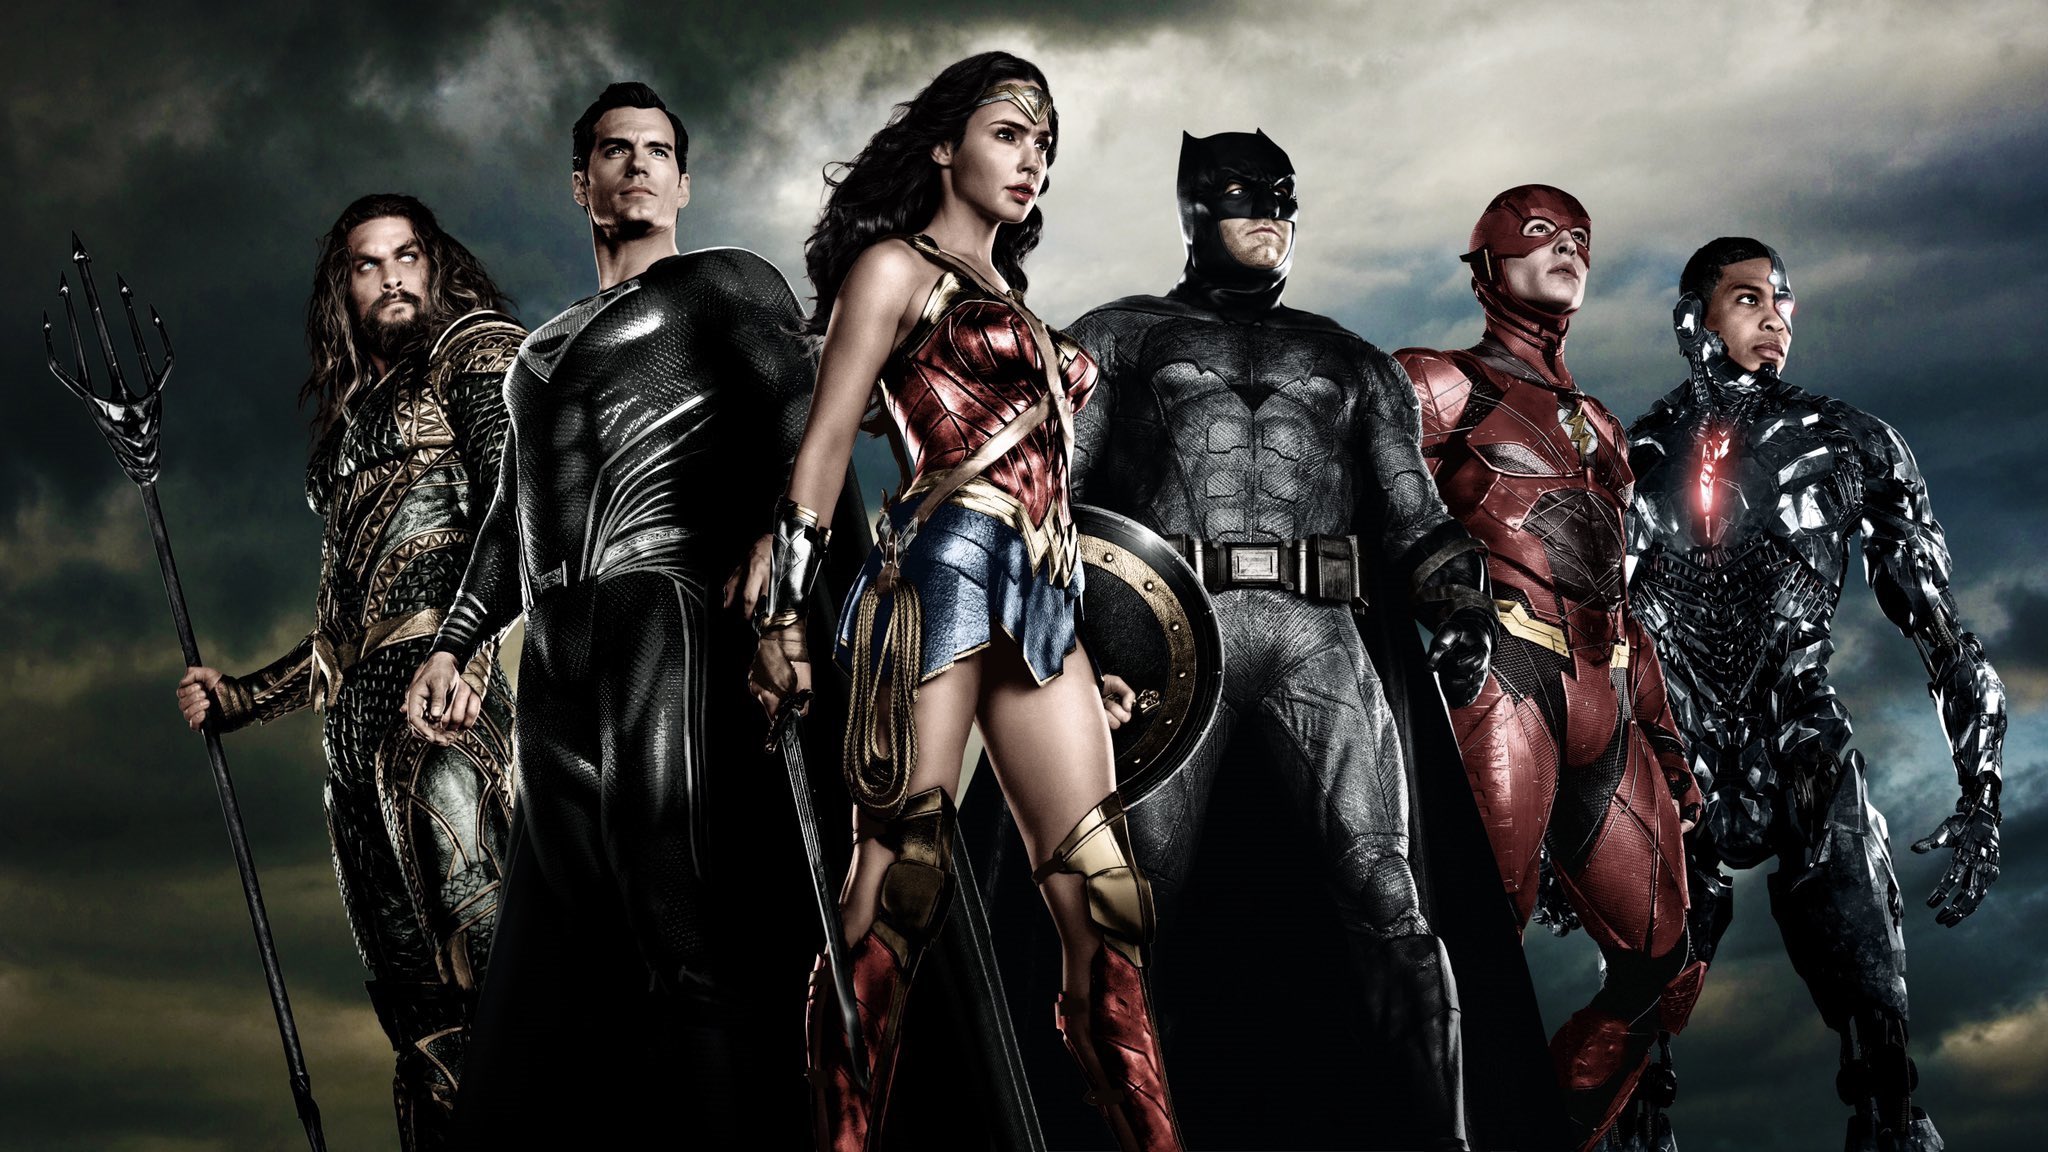 Descarga gratuita de fondo de pantalla para móvil de Superhombre, Destello, Películas, Hombre Murciélago, Aquamán, La Mujer Maravilla, Cyborg (Dc Cómics), La Liga De La Justicia, La Liga De La Justicia De Zack Snyder.